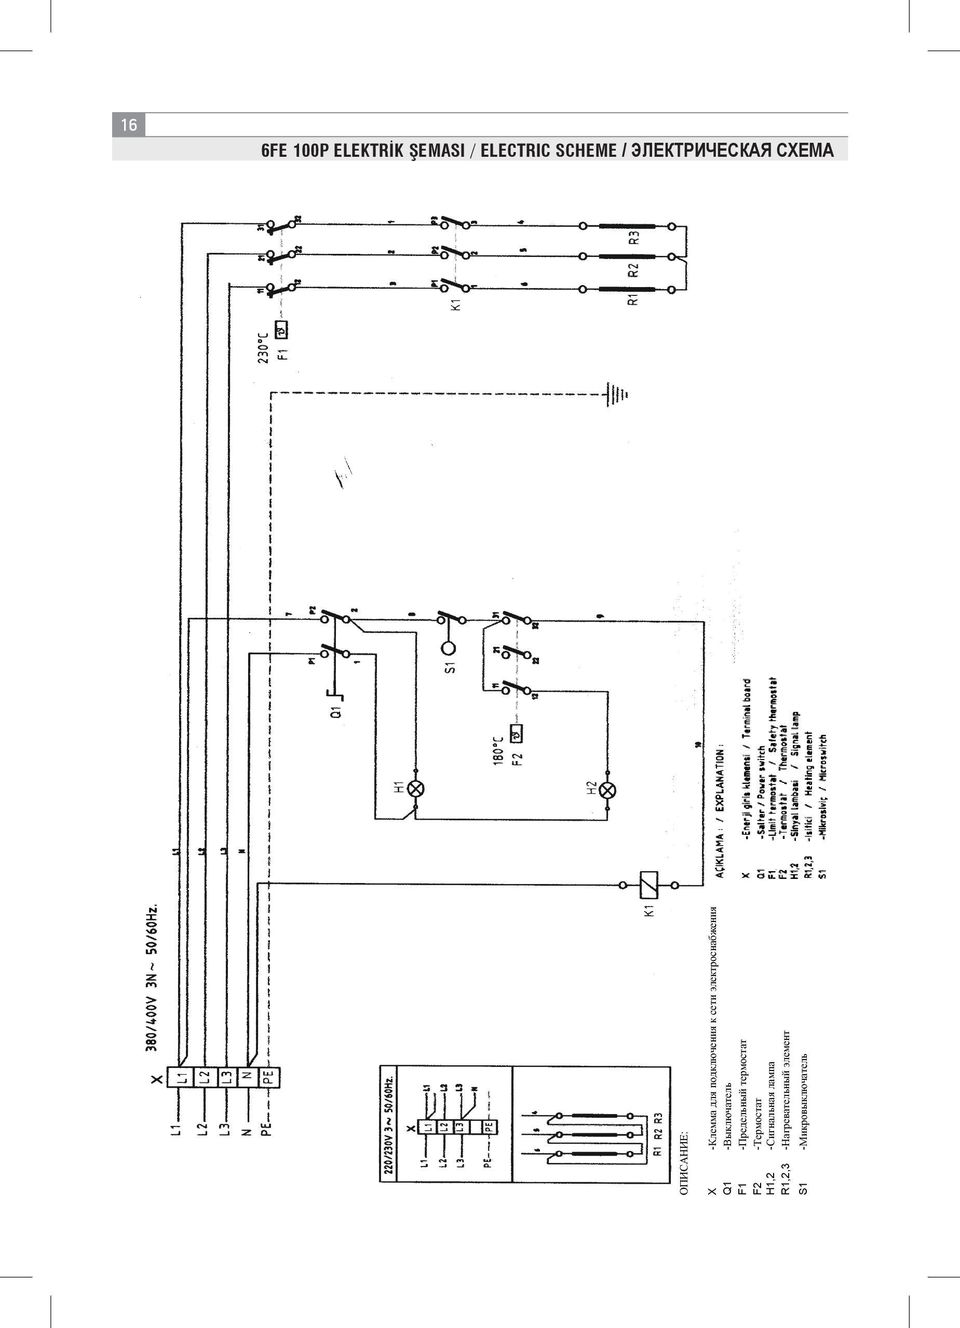 электроснабжения Q1 -Выключатель F1 -Предельный термостат F2